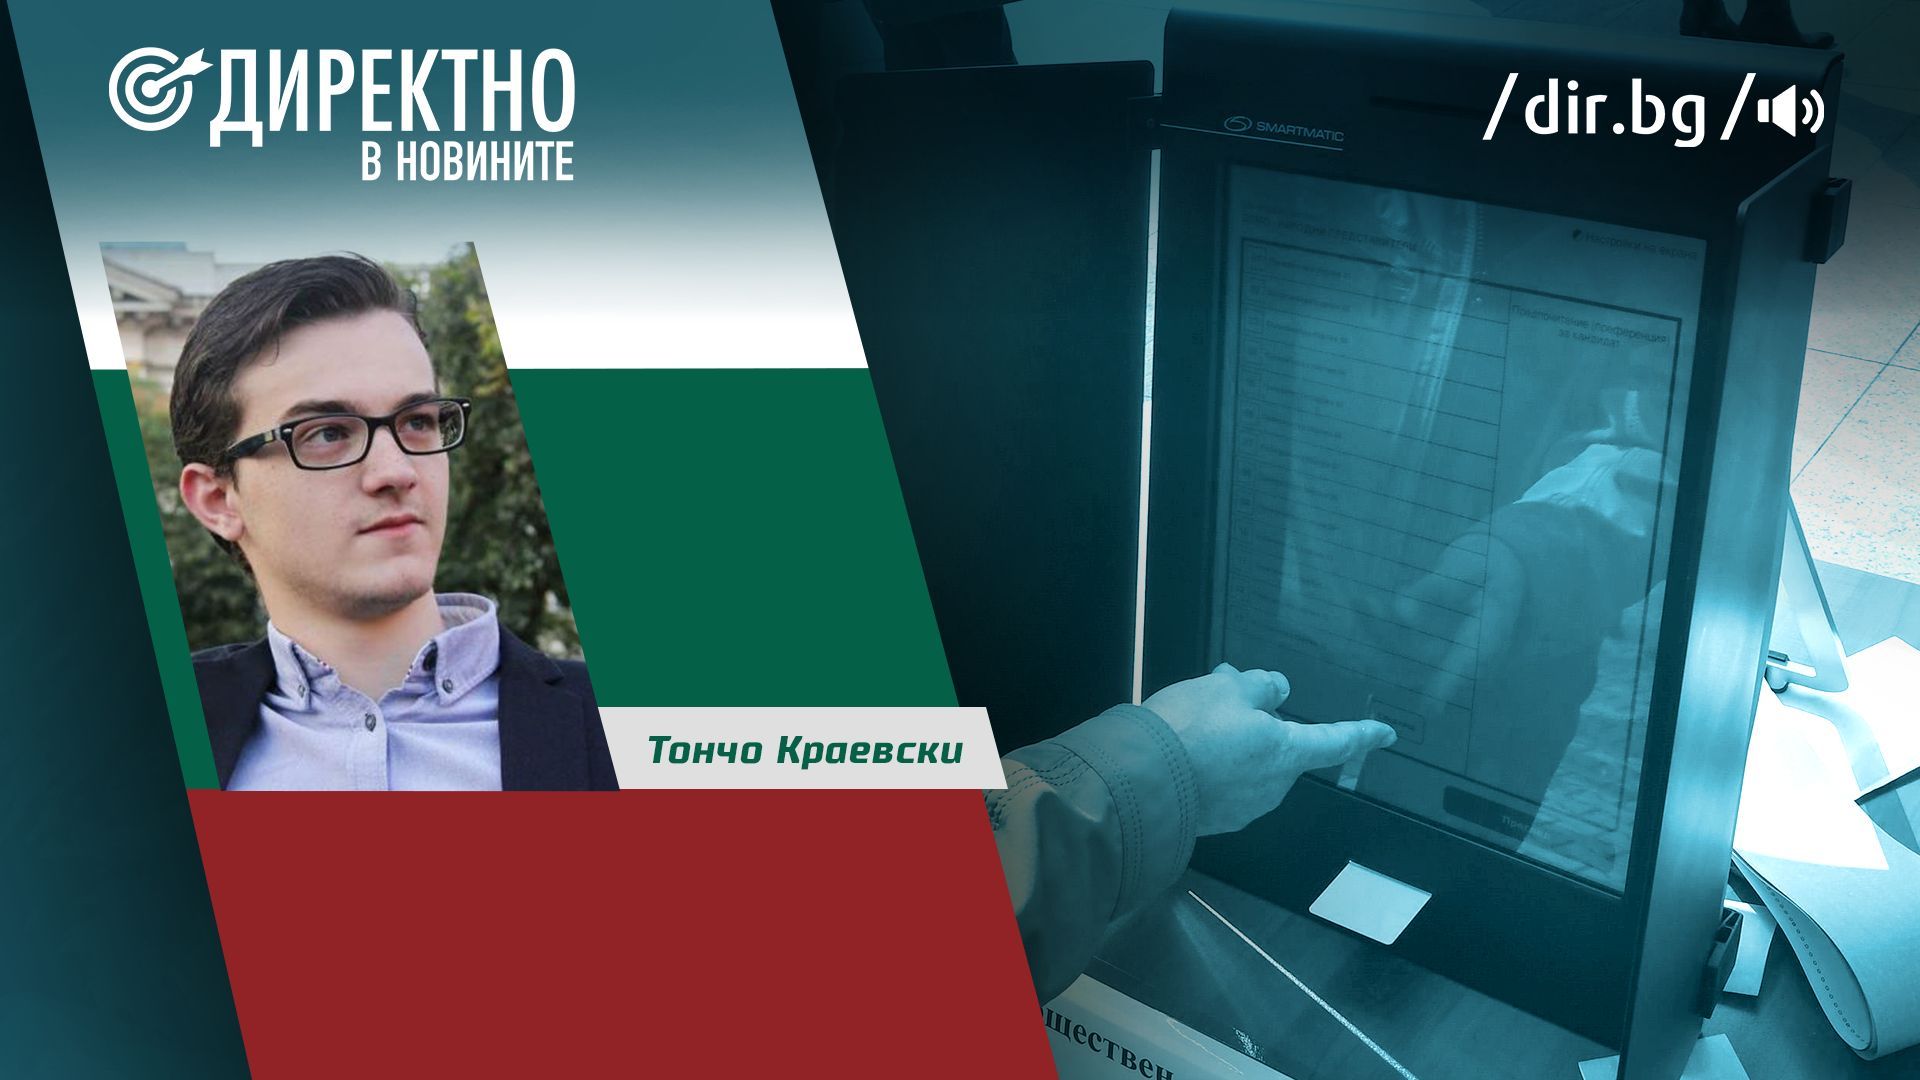 Тончо Краевски: Темата за честността изцяло подмени тази за легитимността на изборите